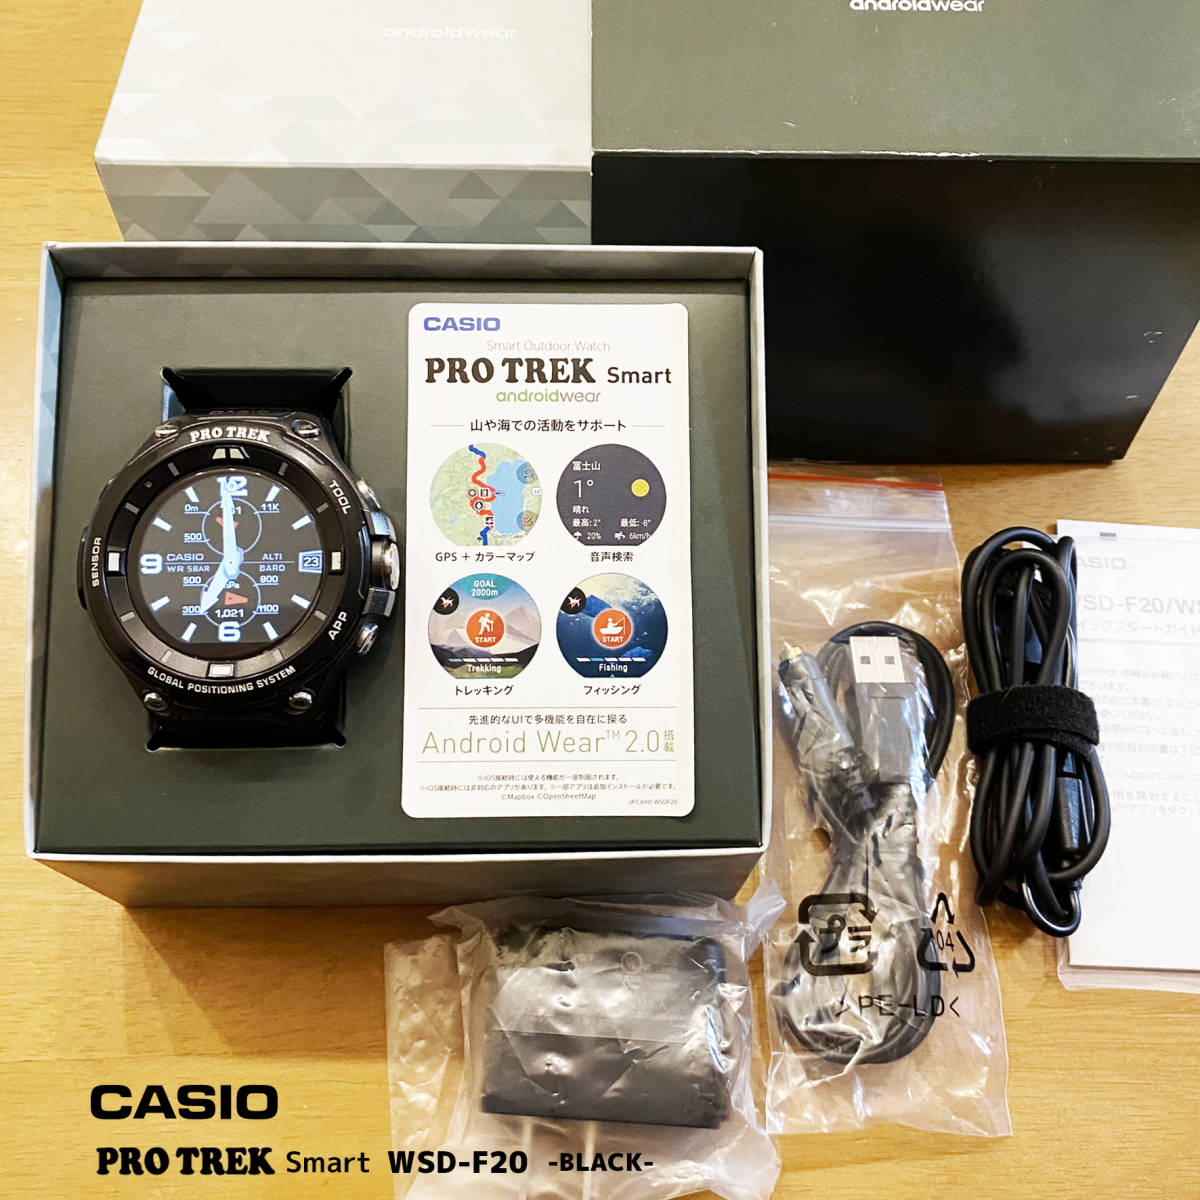 CASIO*PRO TREK WSD-F20* Casio Protrek * смарт-часы * зарядка кабель 2 шт есть 